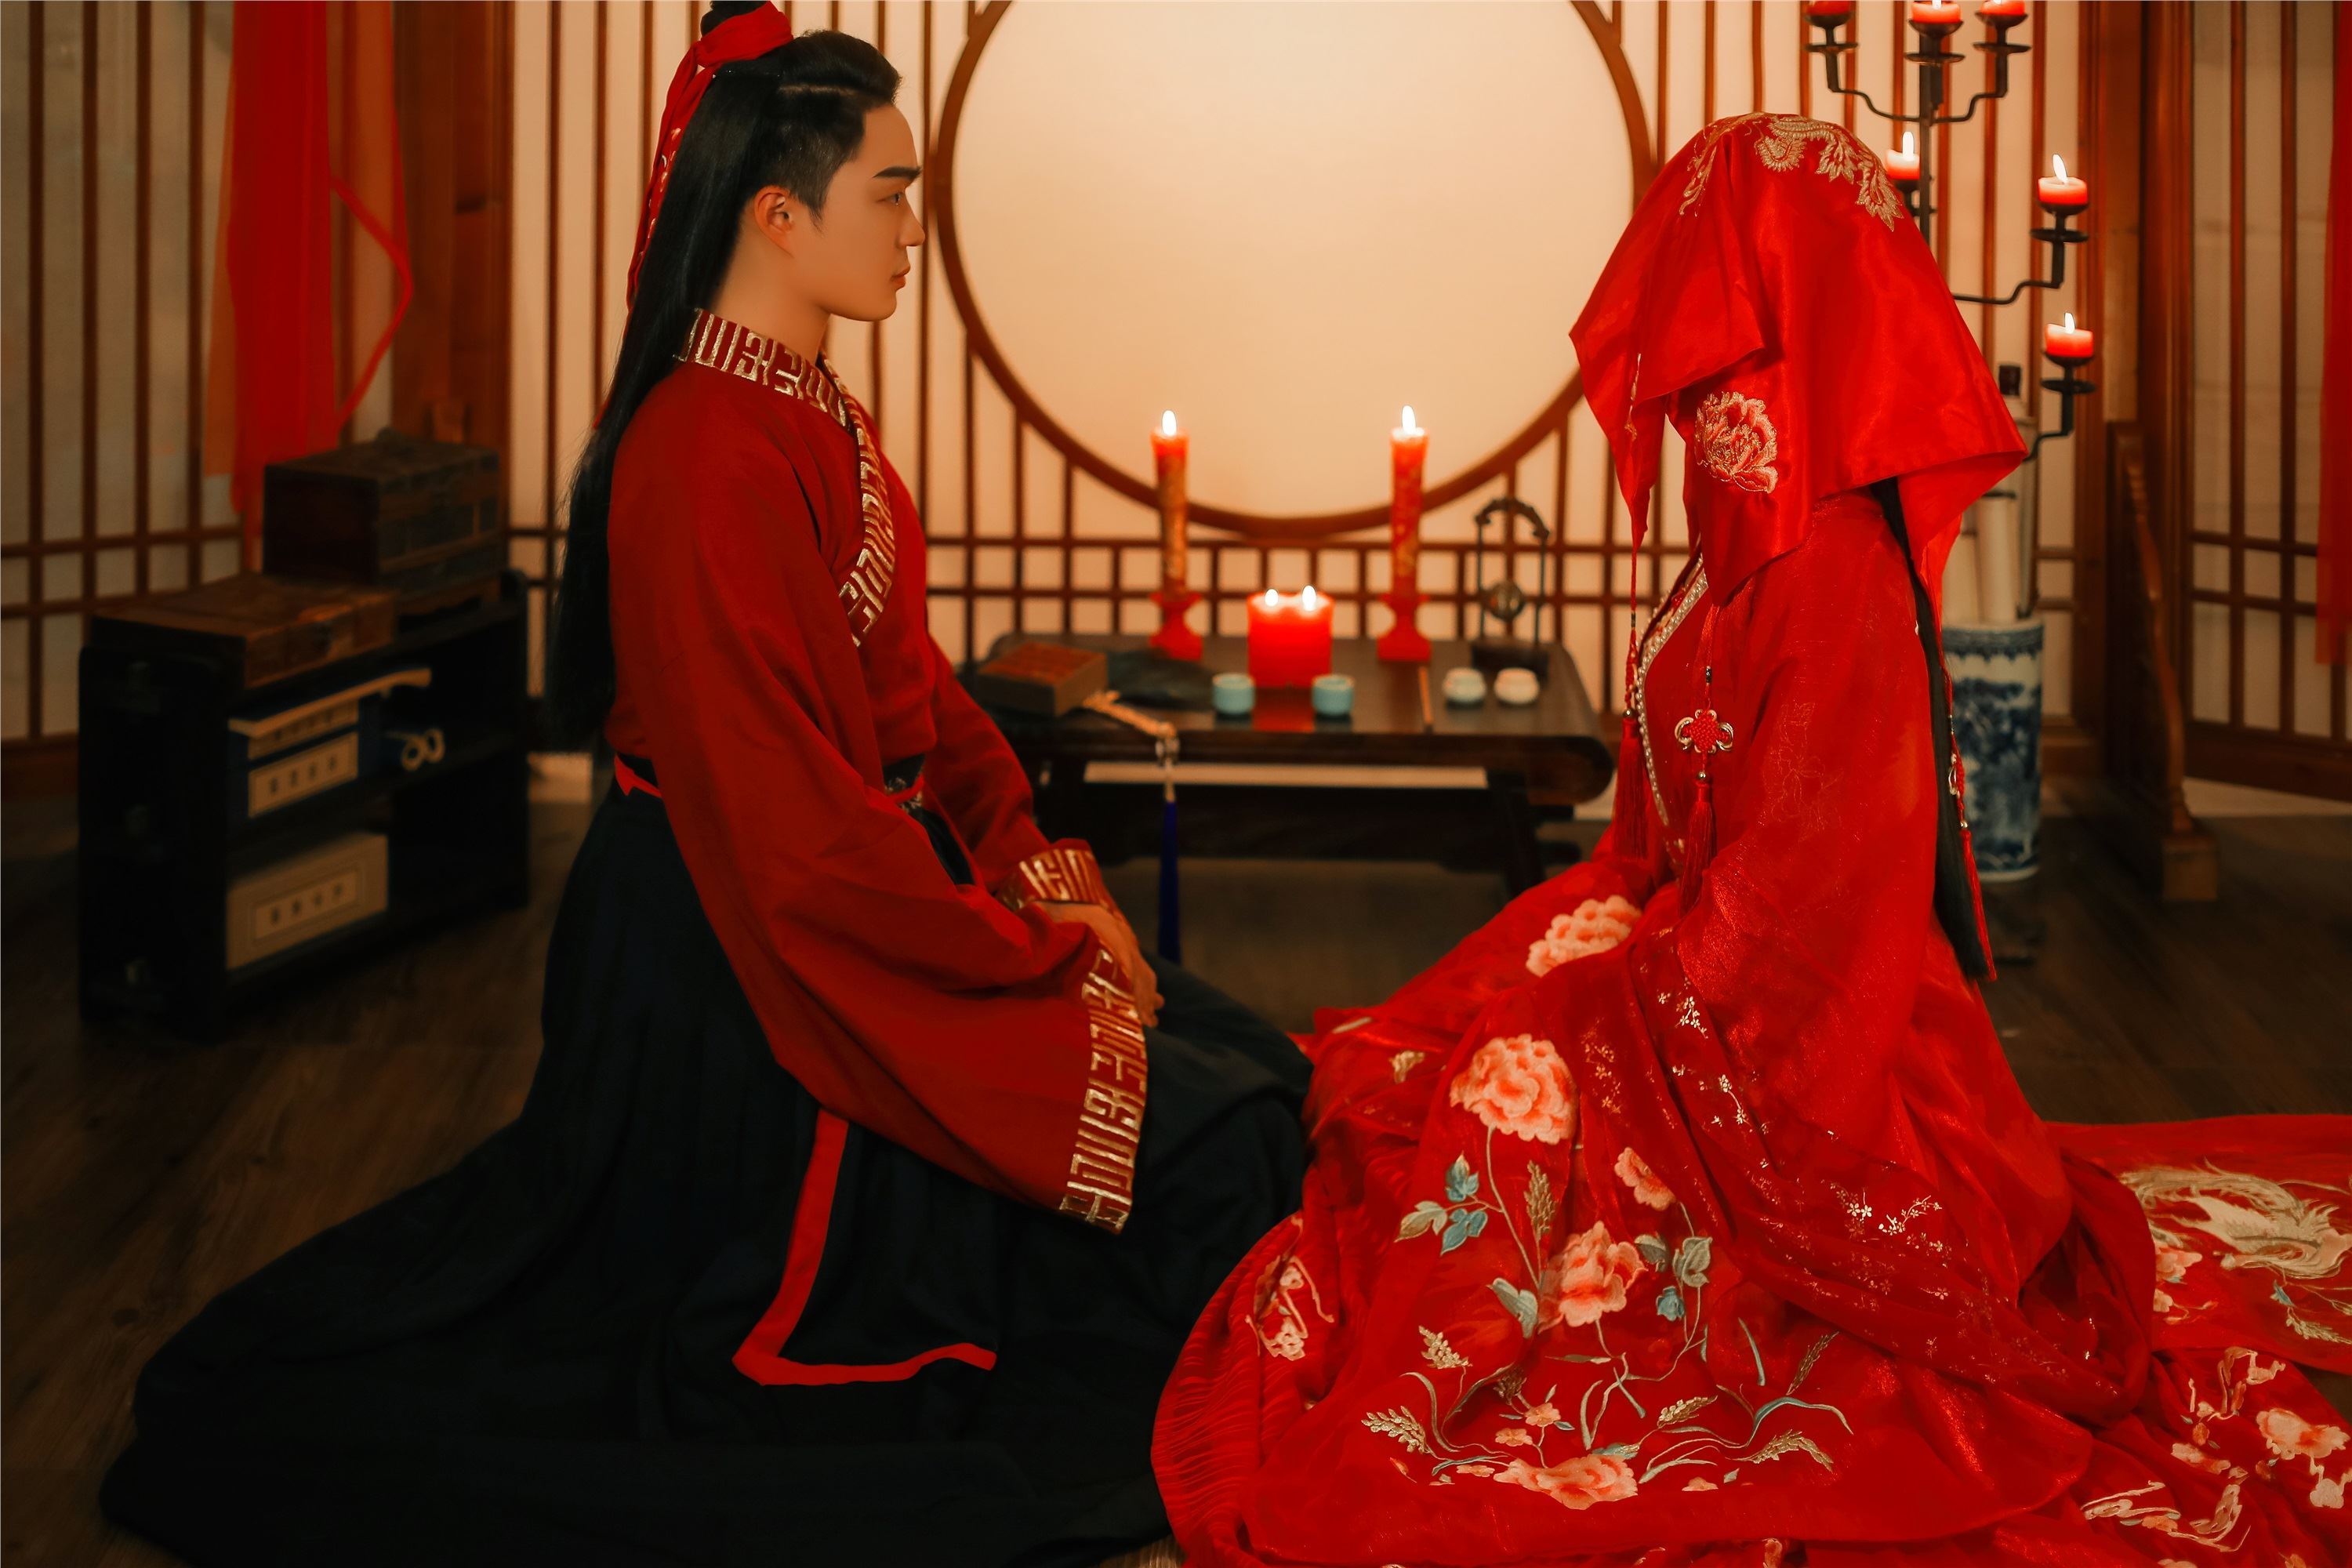 YITUYU Art Picture Language 2021.09.04 Perfect Couple Tiancheng Yinyin